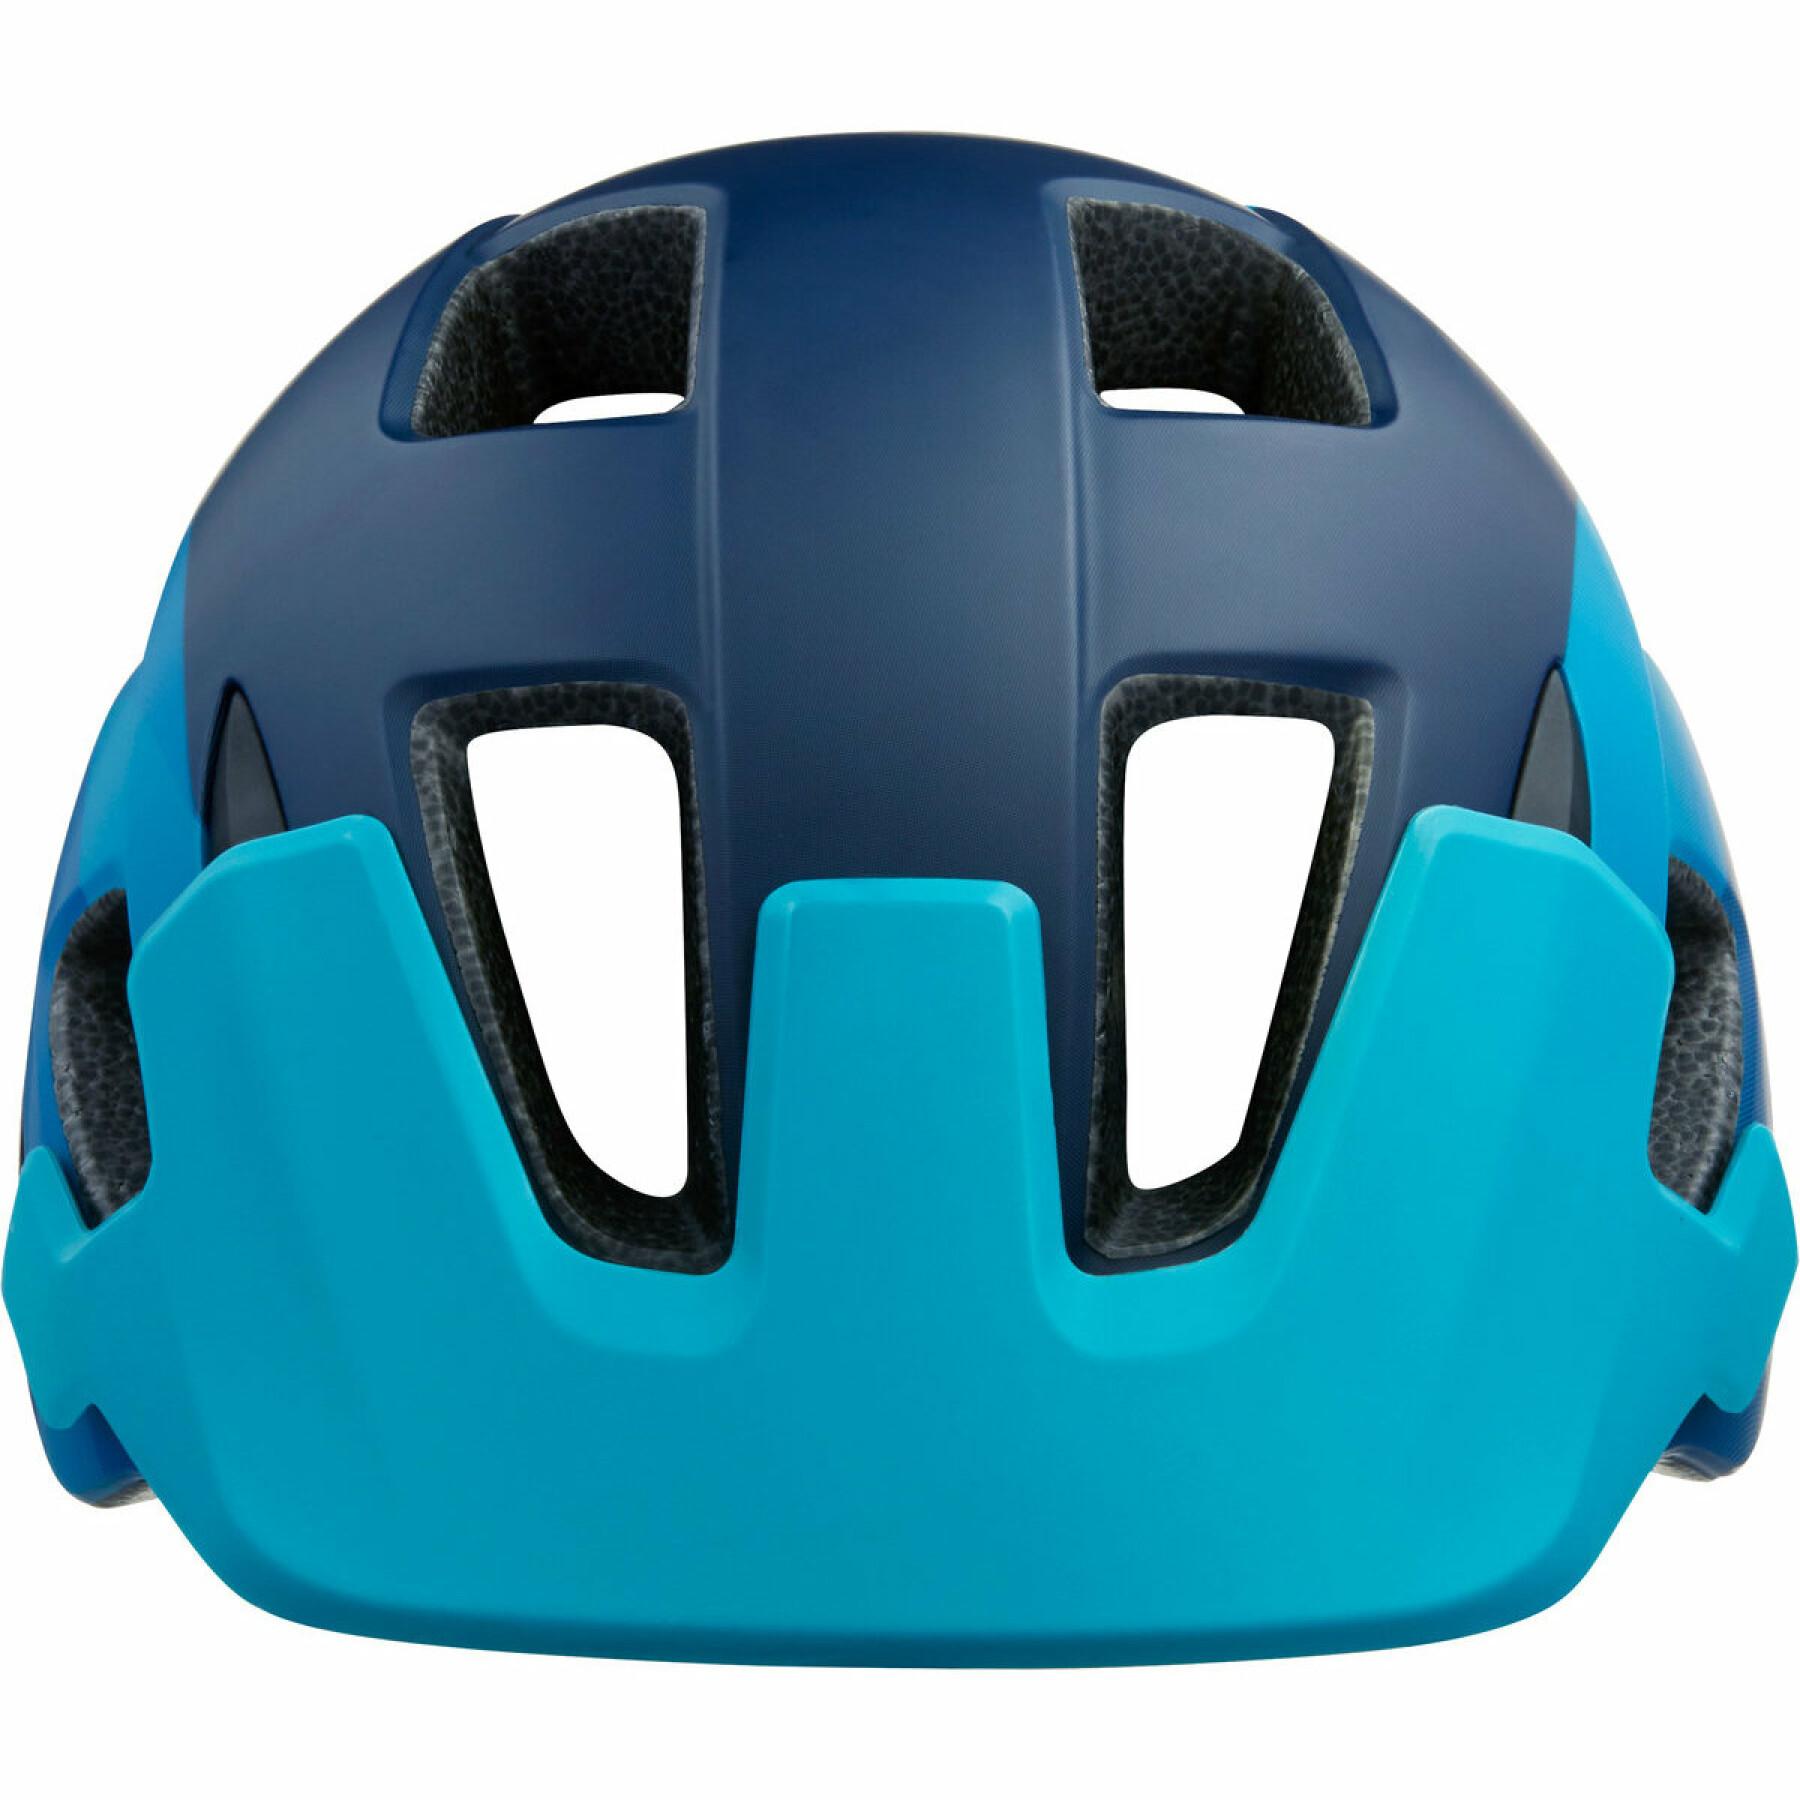 Bike helmet Lazer Chiru MIPS CE-CPSC